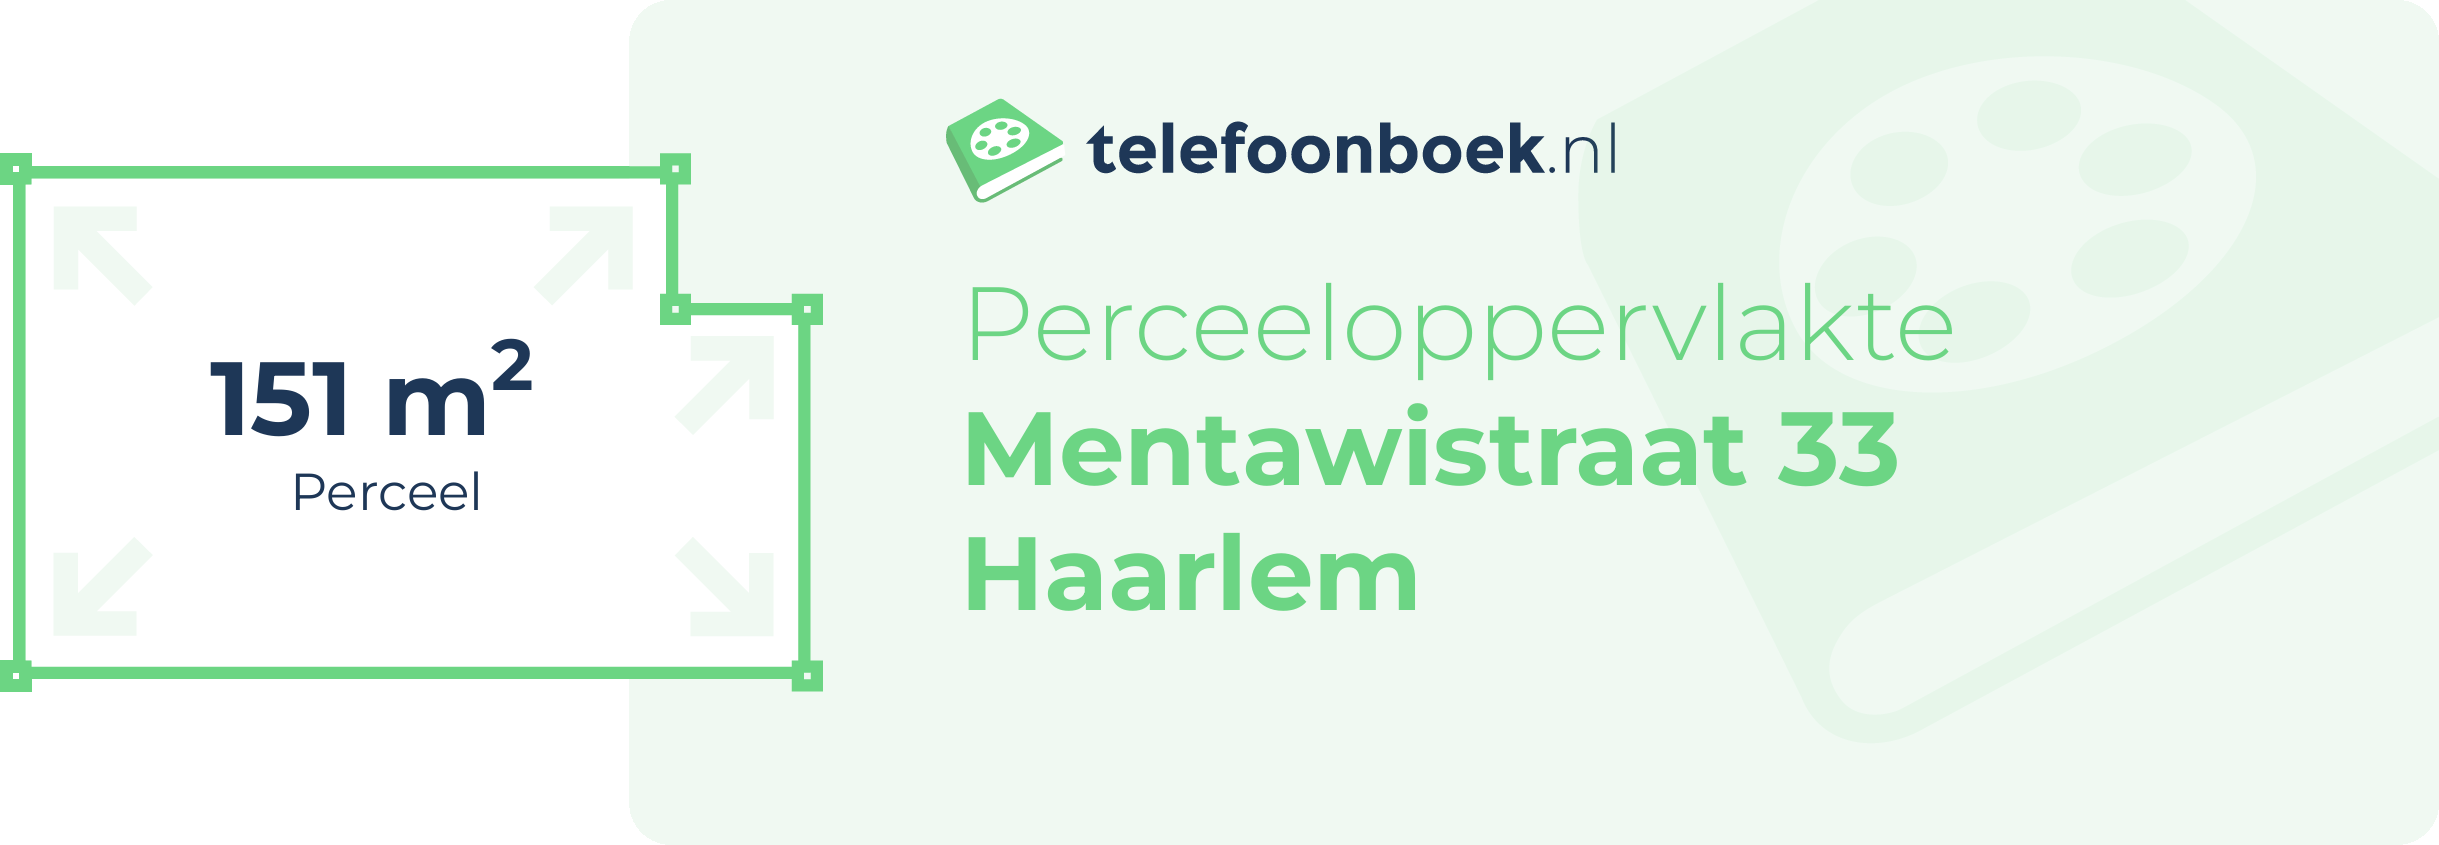 Perceeloppervlakte Mentawistraat 33 Haarlem